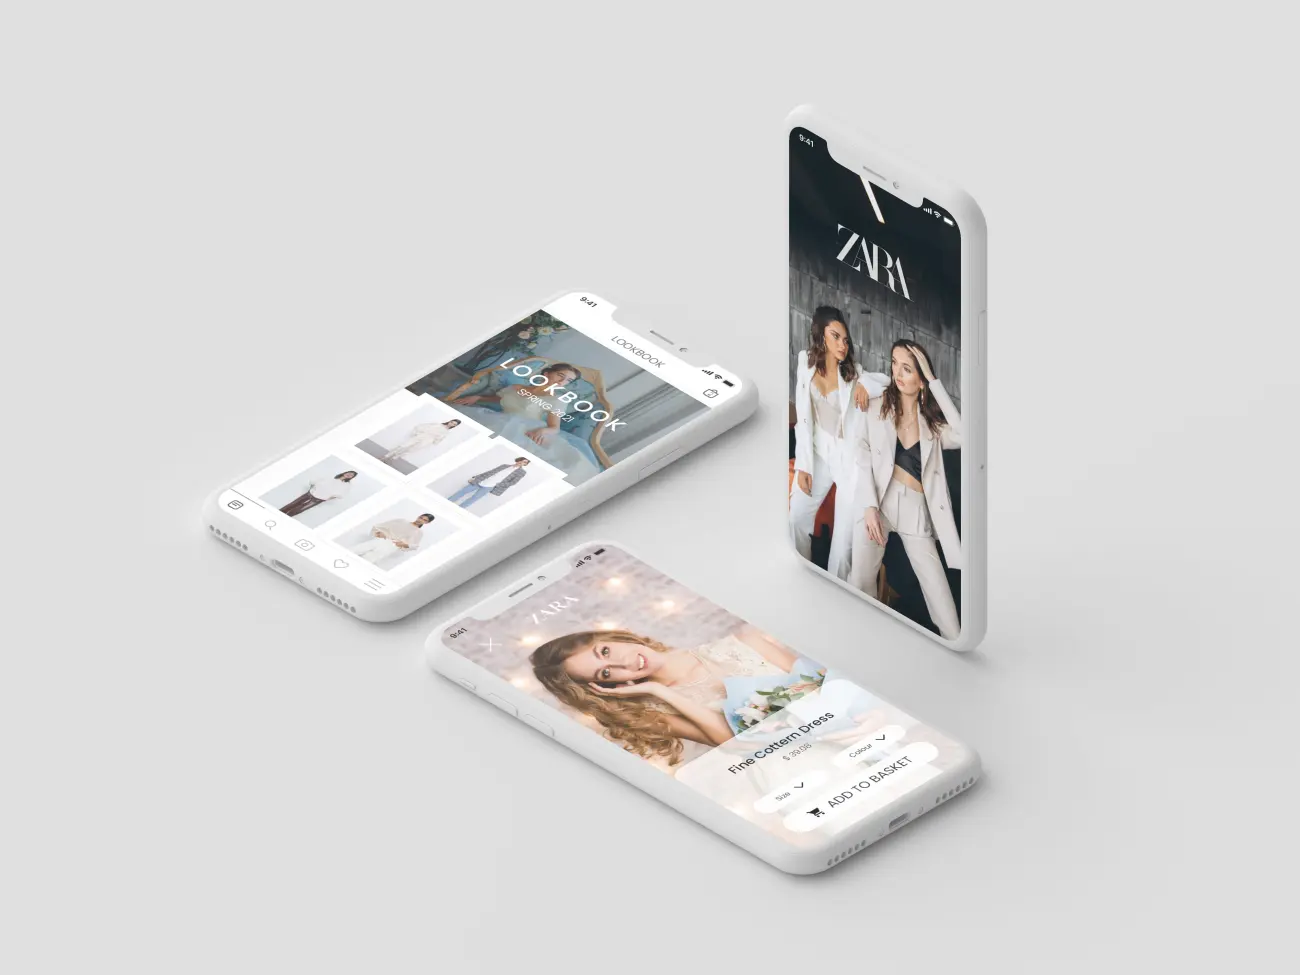 zara shopping app ui kit潮流服饰电商应用设计模板插图3